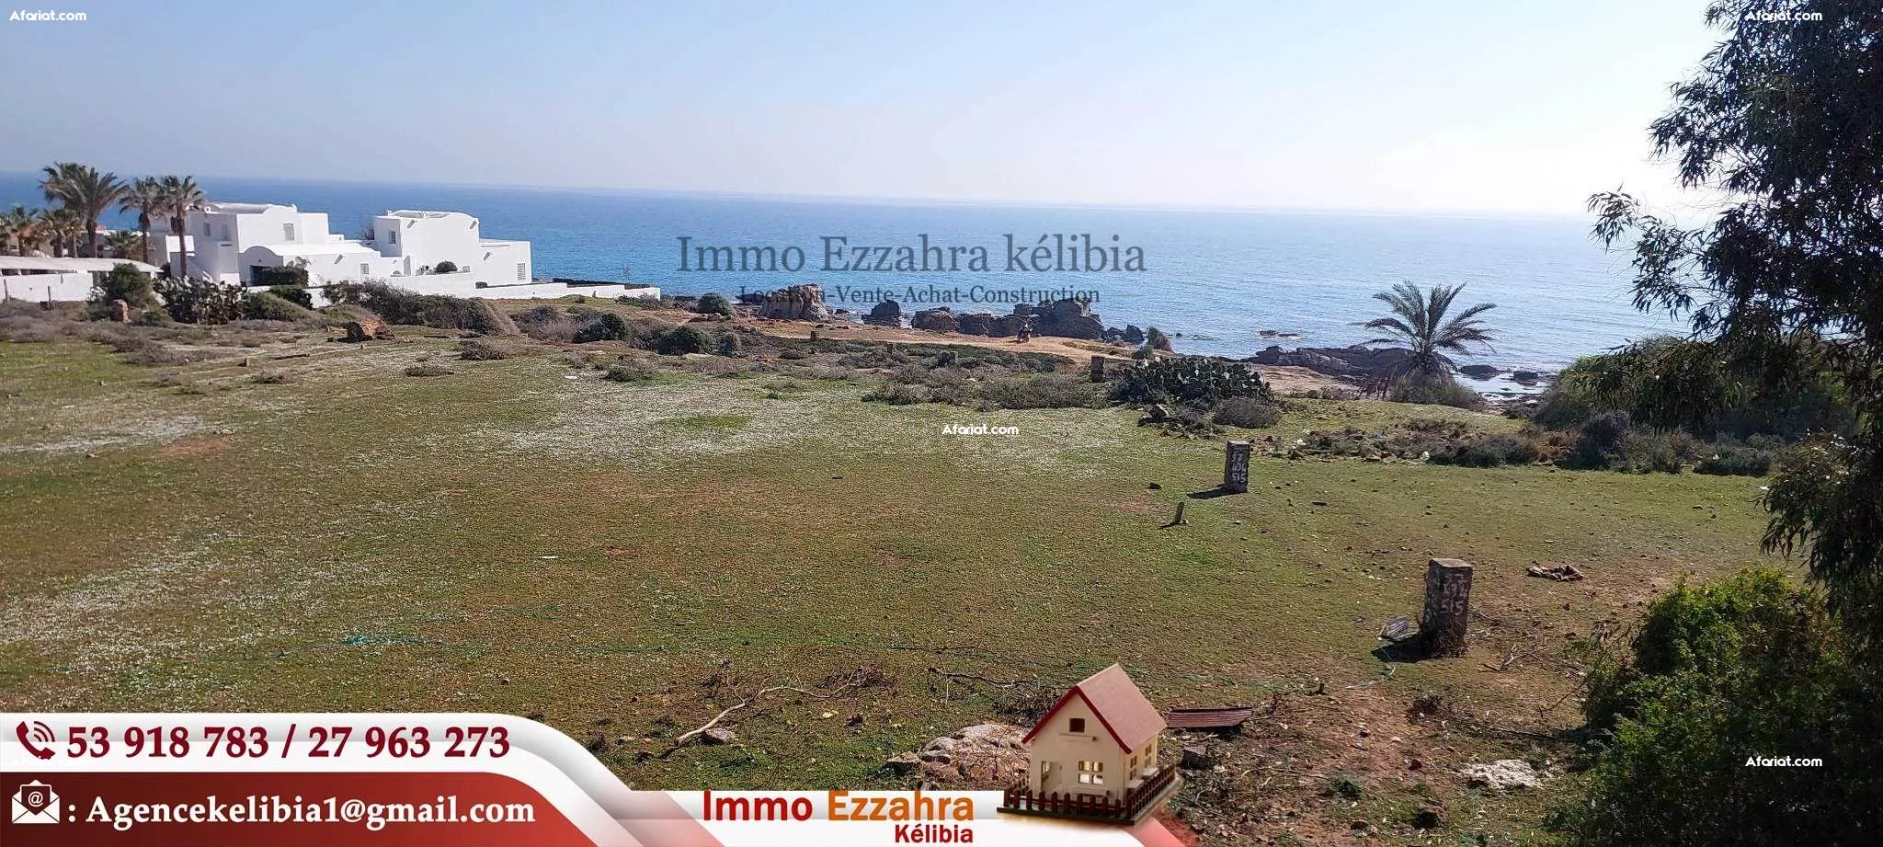 Un terrain à #ELfatha #kelibia  s'ouvre sur la route touristique